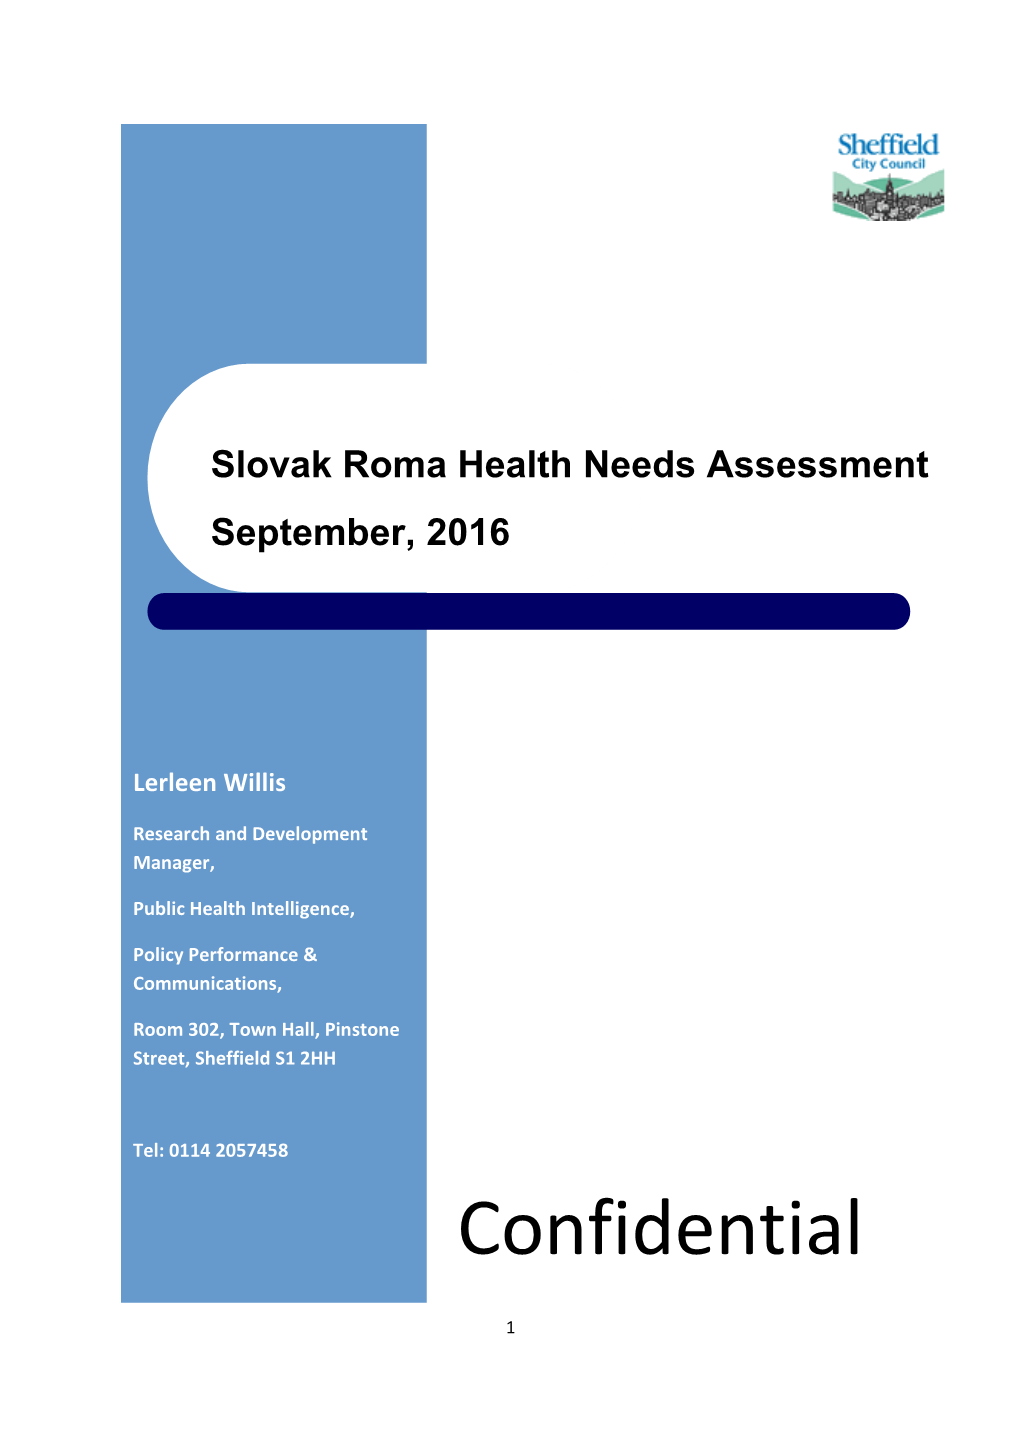 Slovak Roma Health Needs Assessment September, 2016